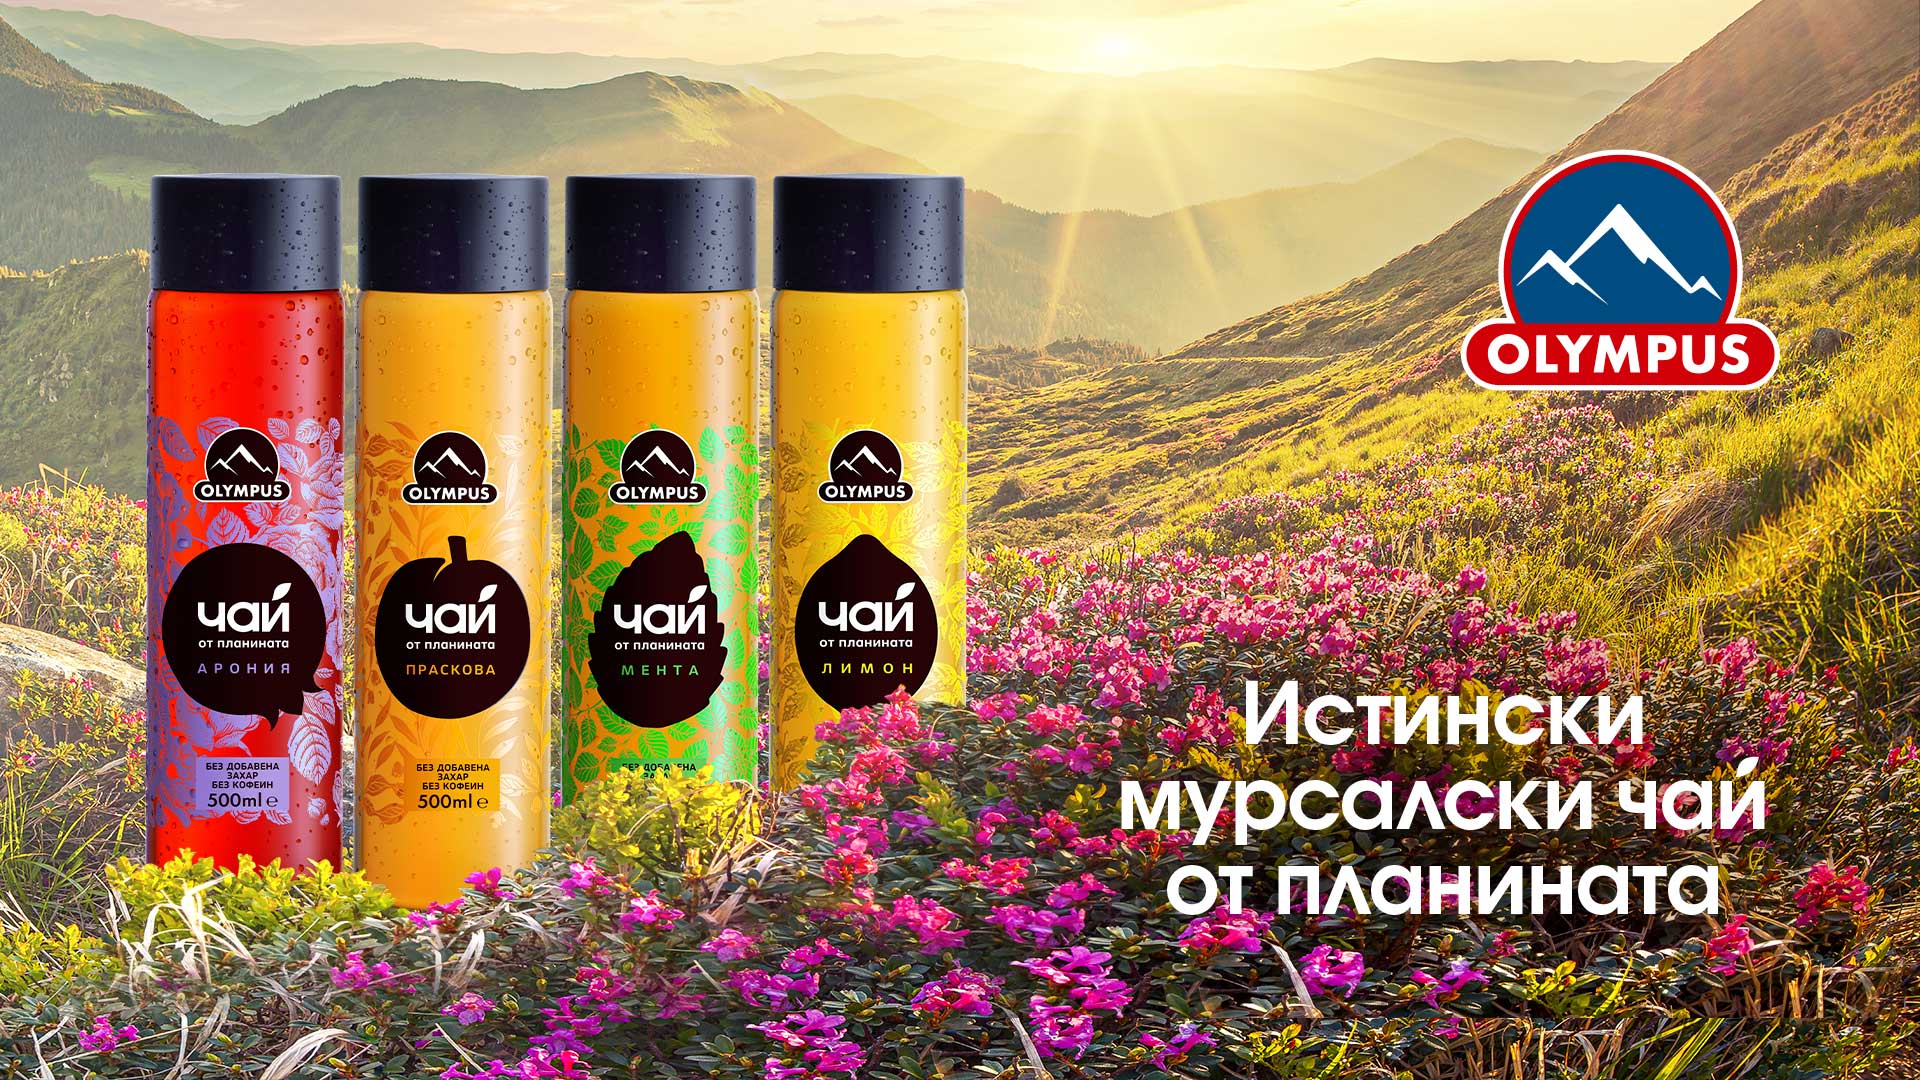 Студен чай Olympus: Глътка здравословна свежест от планината